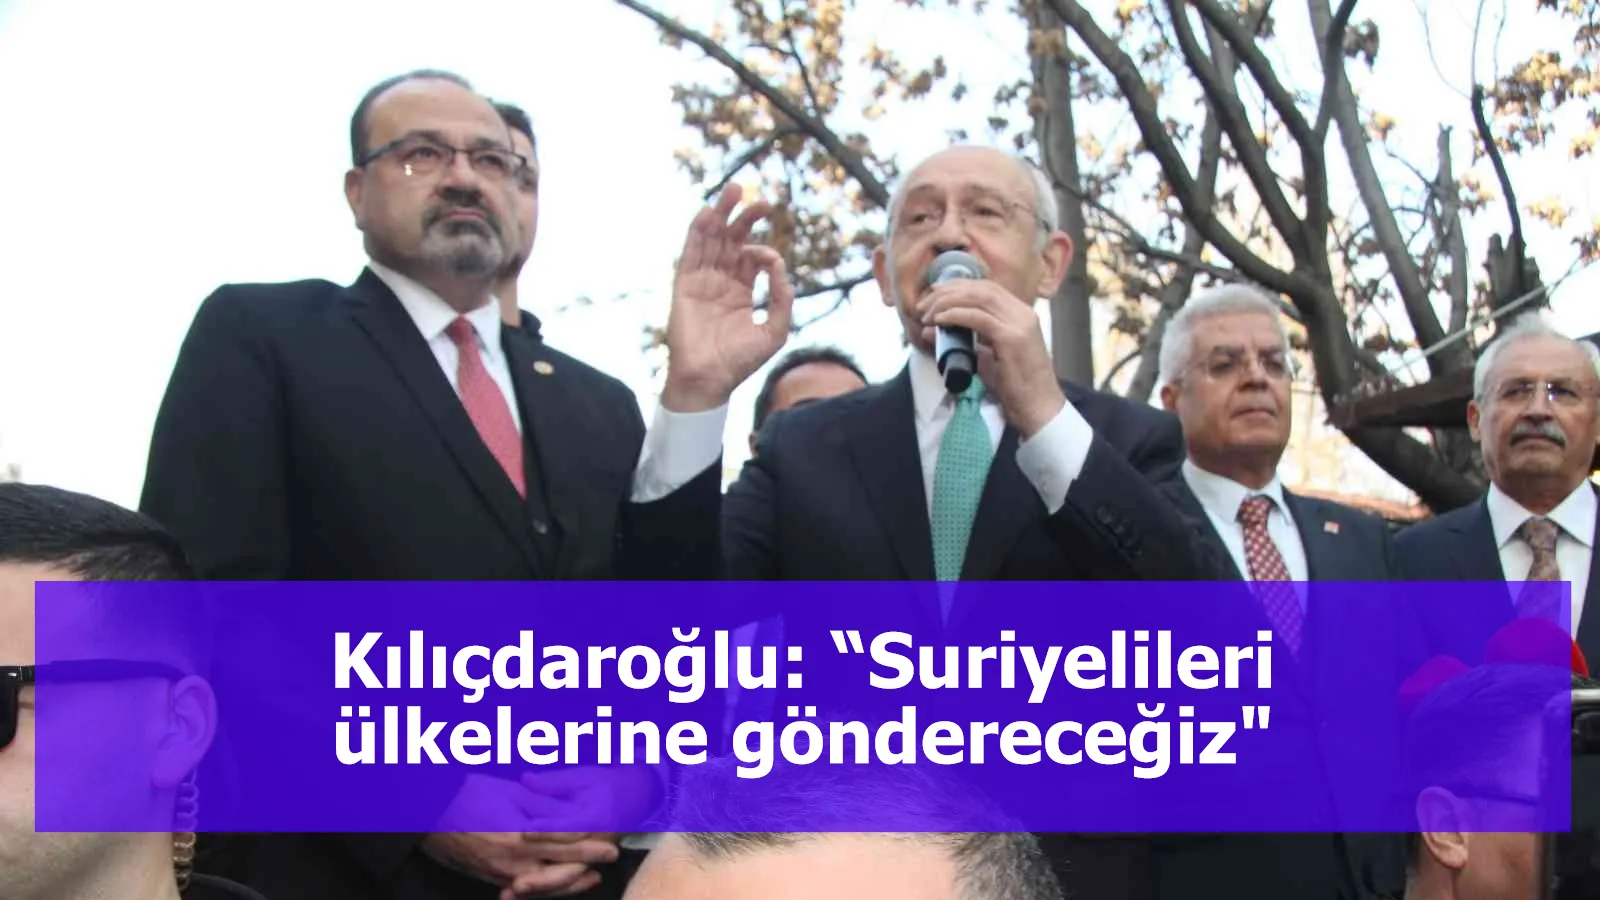 Kılıçdaroğlu: “Suriyelileri ülkelerine göndereceğiz"